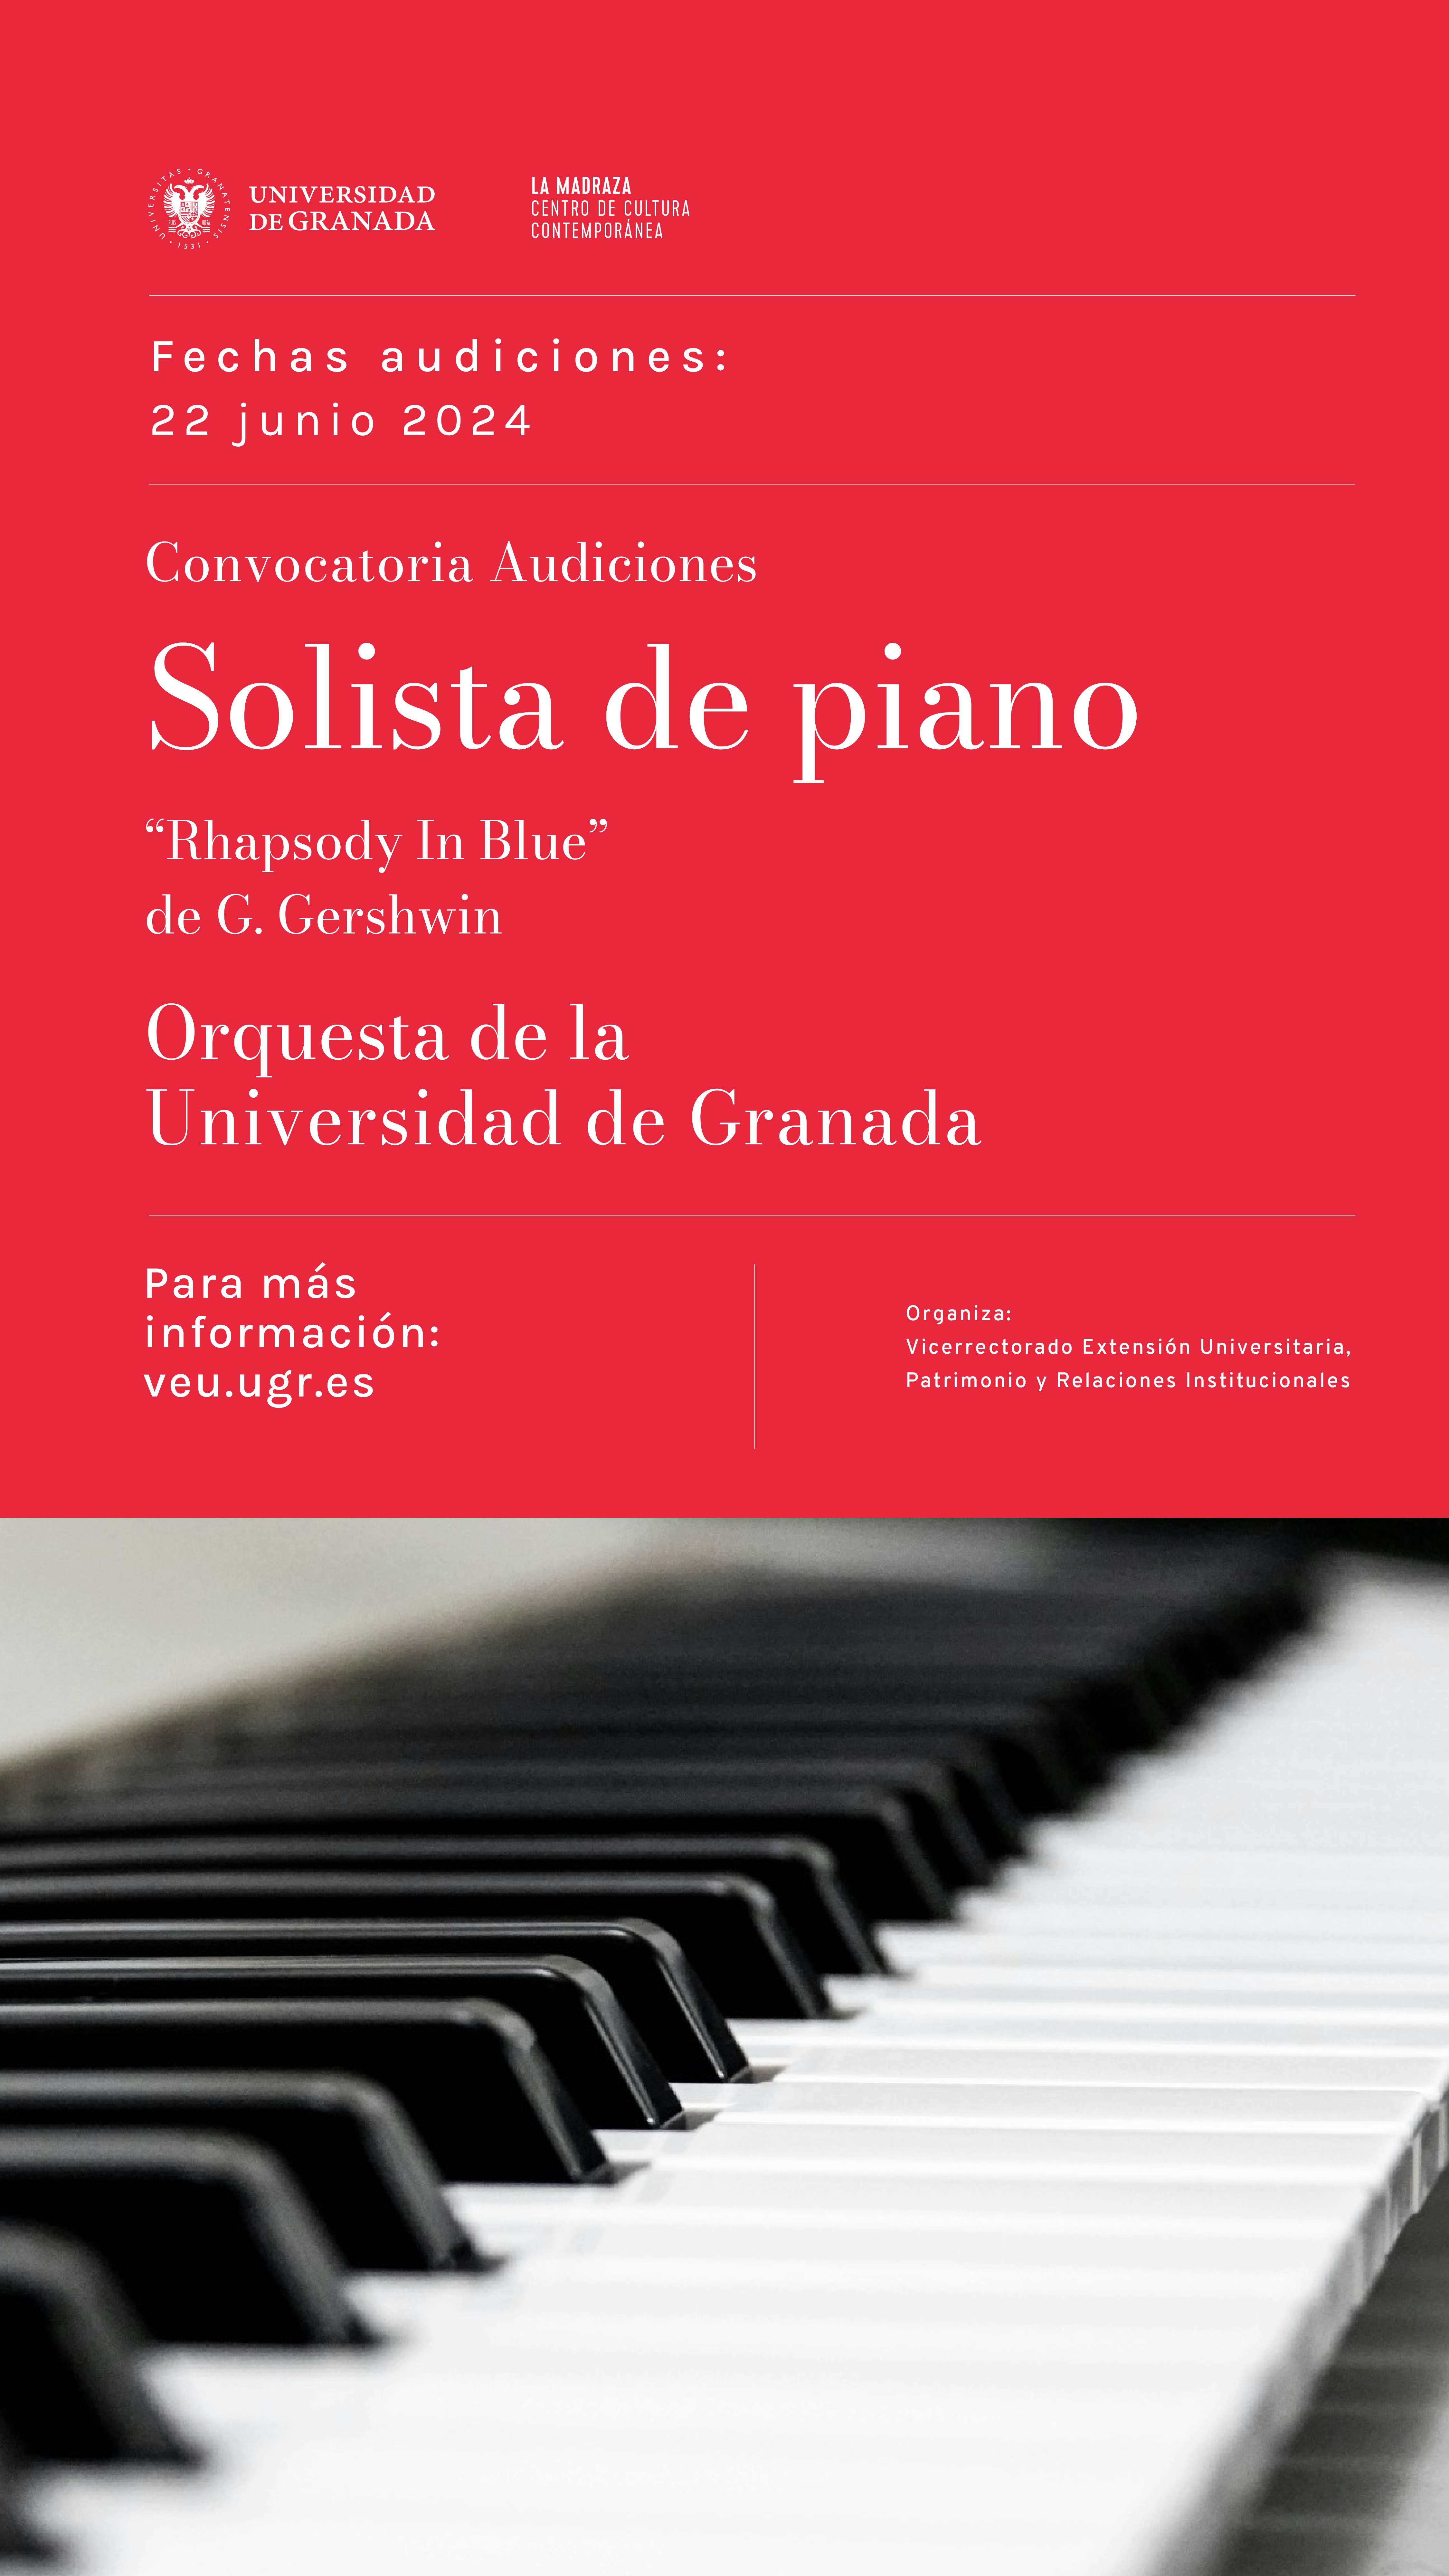 Cartel anunciador de la audición en el que aparece el texto informativo y una fotografía en primer plano de las teclas de un piano